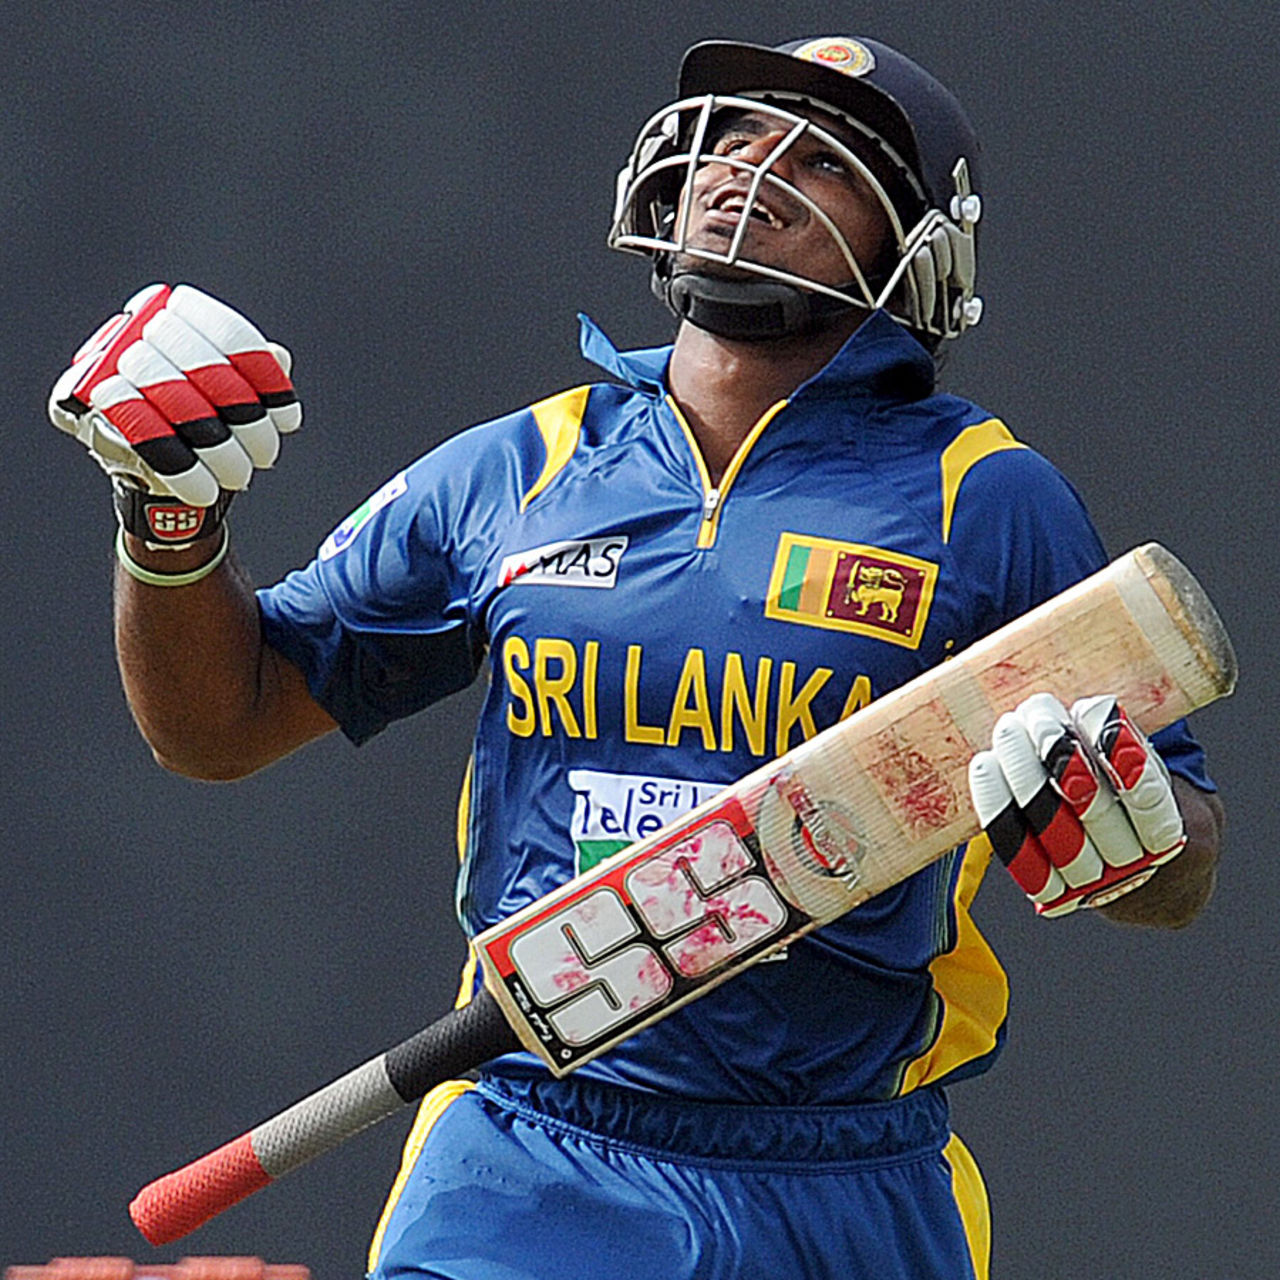 Kusal Perera reacts after reaching 50, Sri Lanka v Bangladesh, 3rd ODI, Pallekele, March 28, 2013